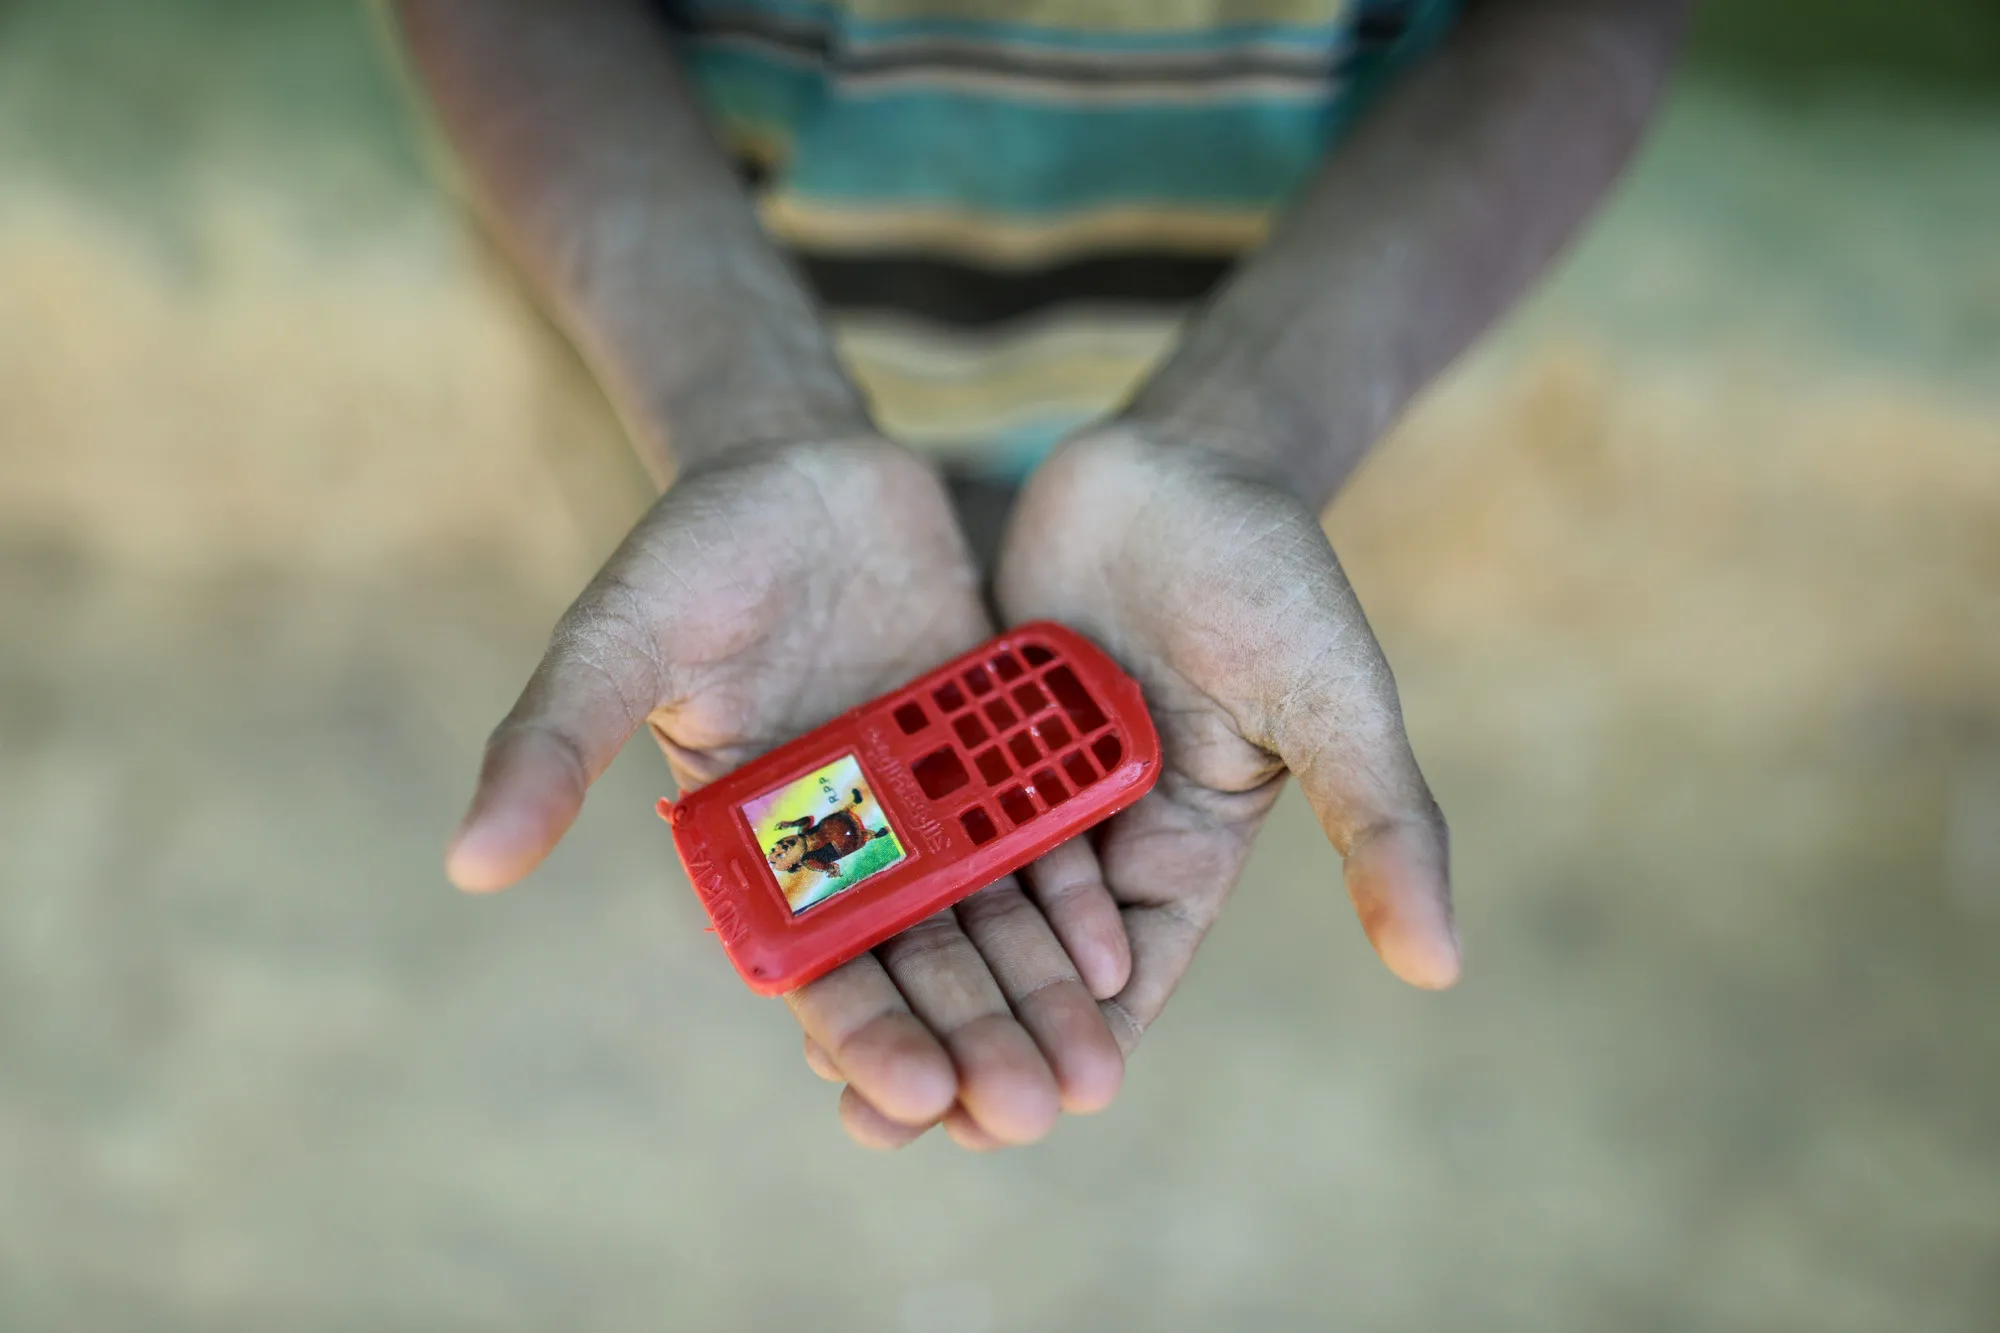 Mohammad encontrou este telefone de plástico em uma caixa de lanche que recebeu. O menino de 10 anos fugiu de Mianmar depois que sua casa foi incendiada. Um dia ele quer ter um telefone de verdade para ligar para os amigos.